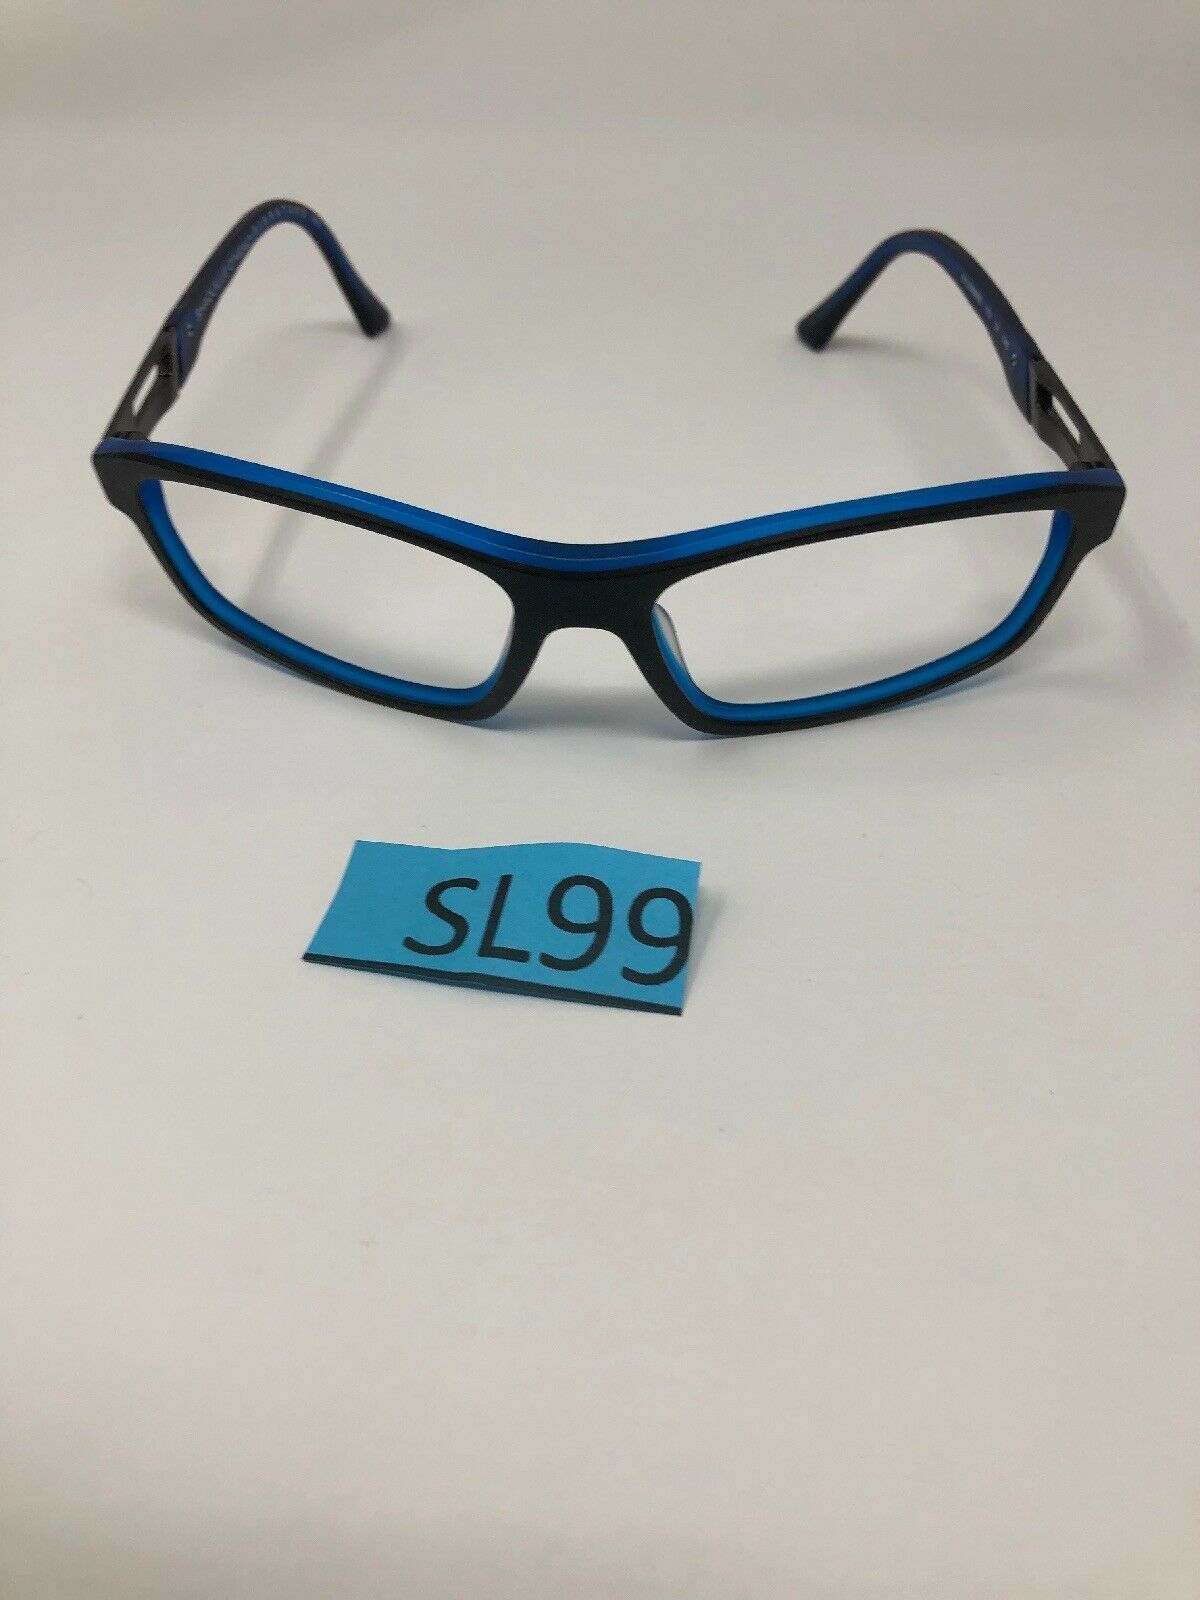 Shaquille Oneal Signature Eyeglasses Frame 8002 59 16 145 Blackblue Matte Sl99 Eyeglass Frames